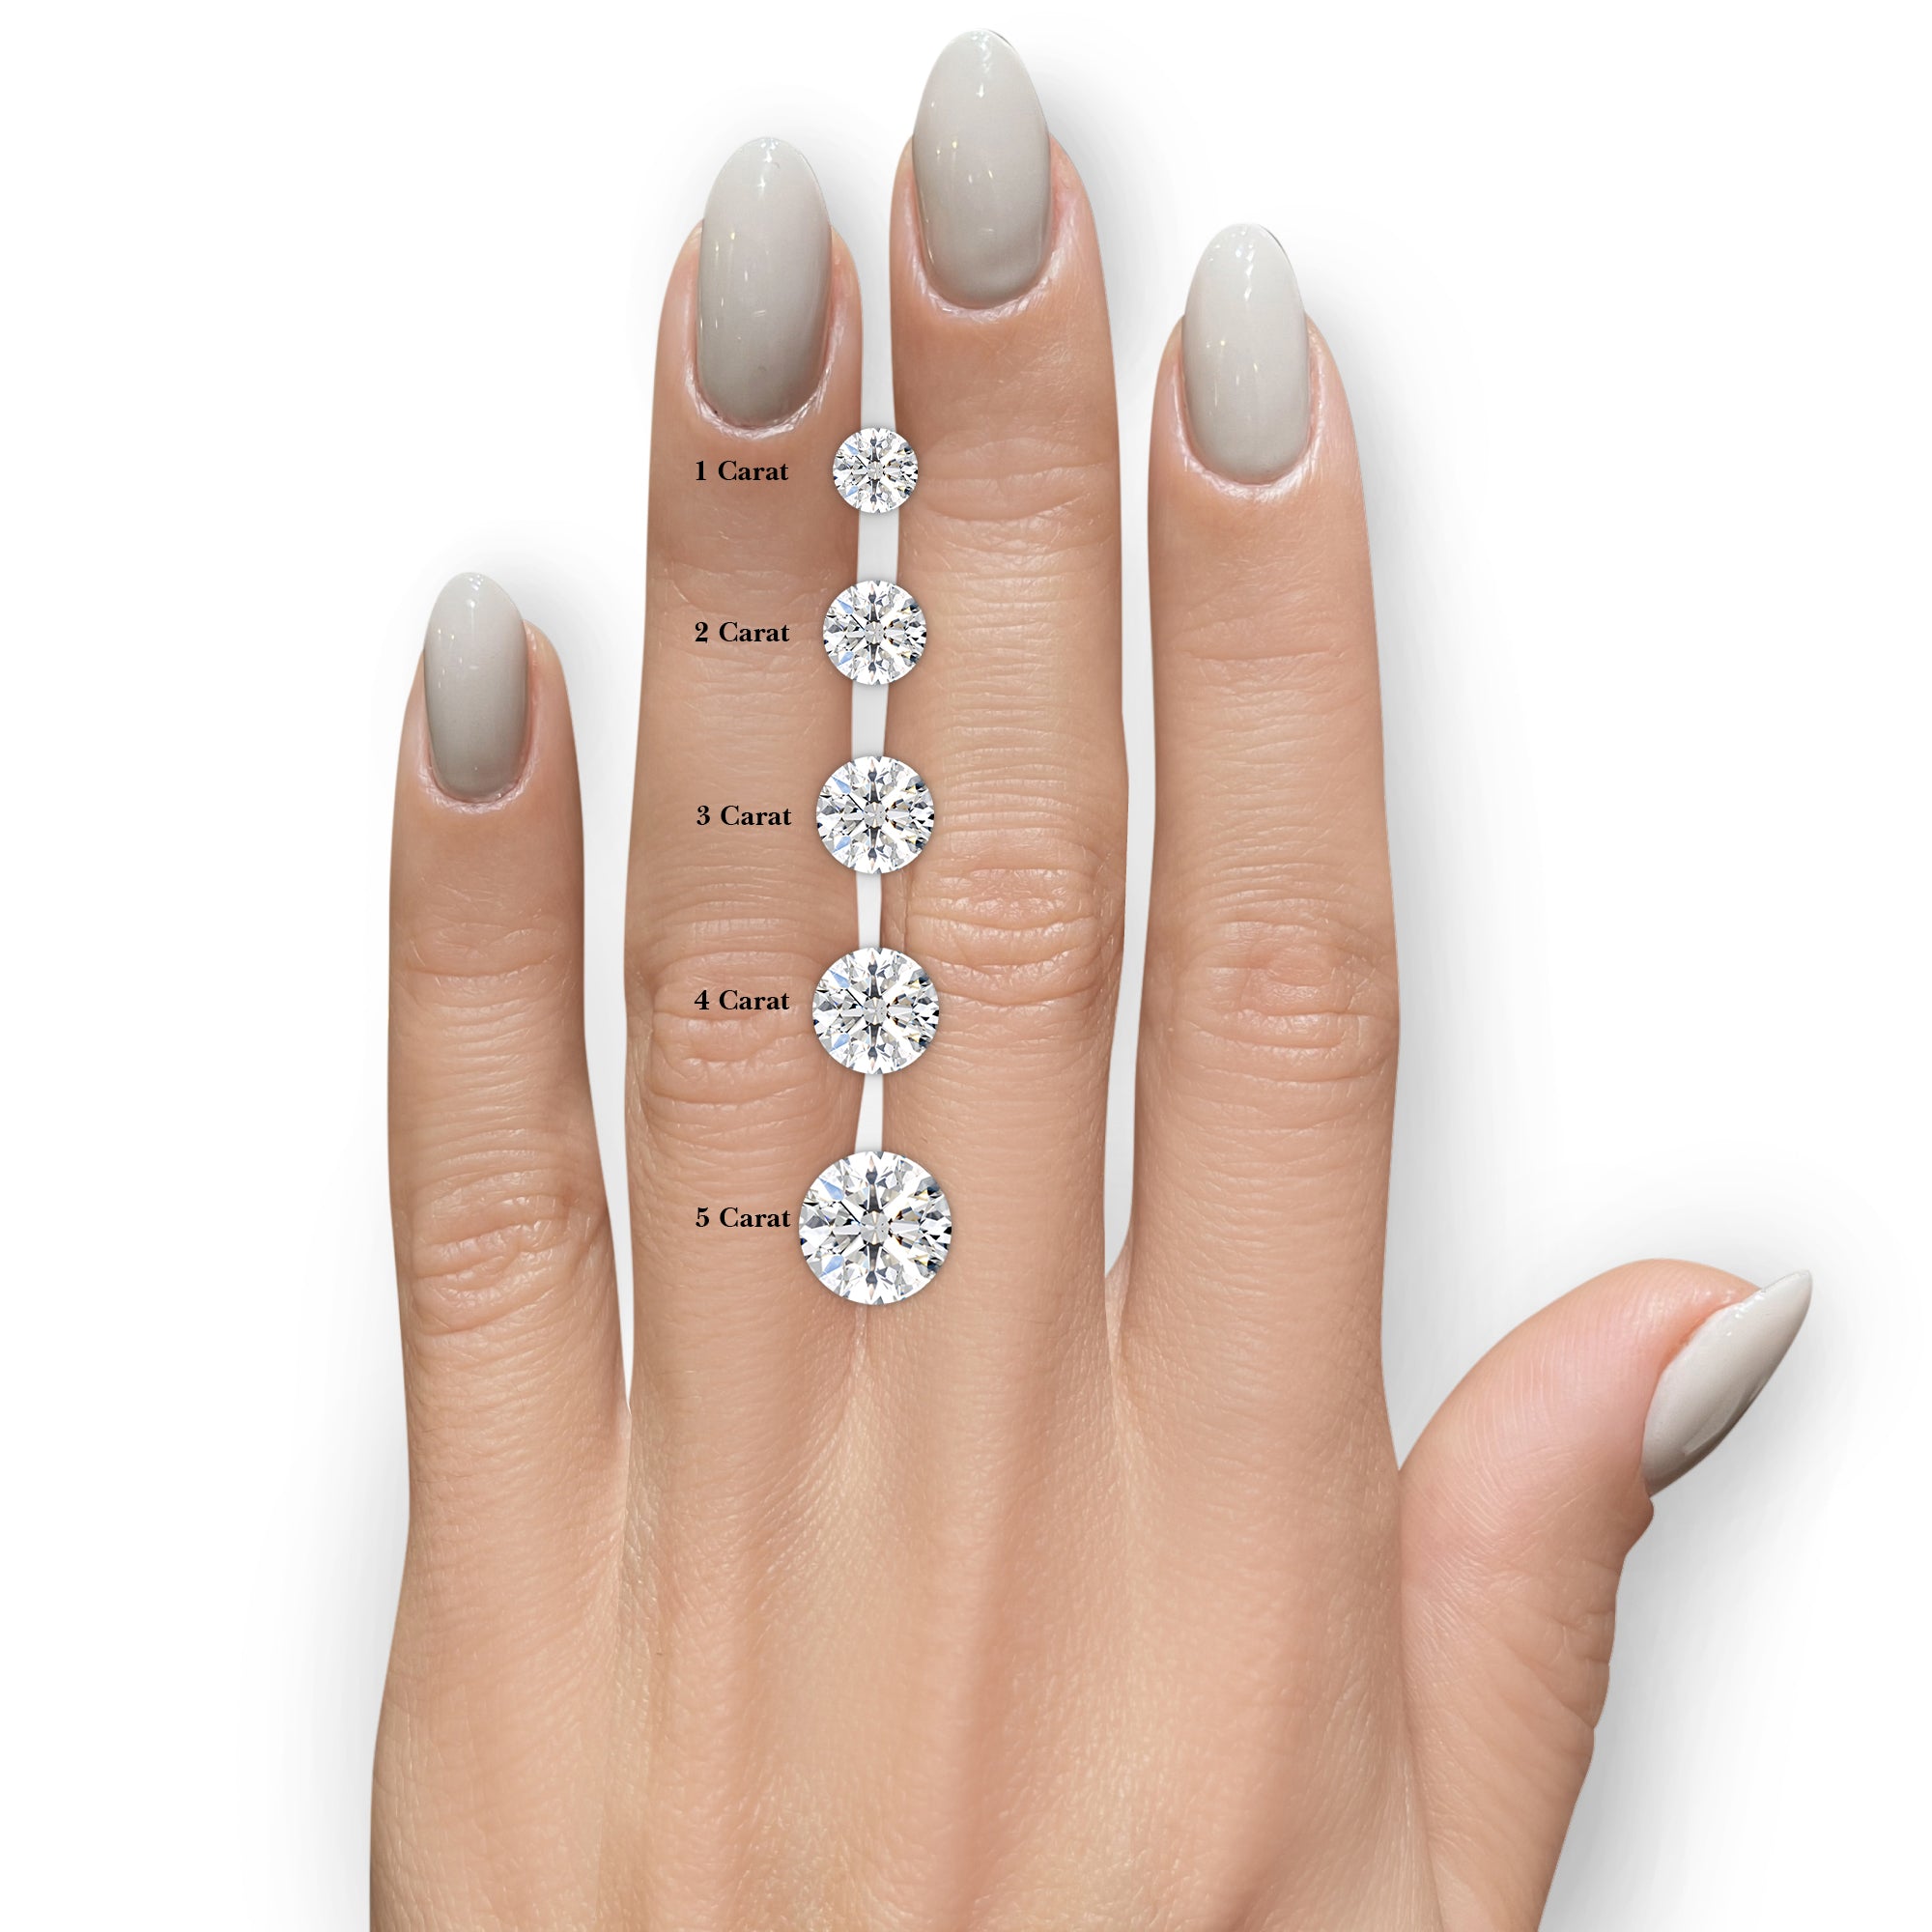 Lillian Diamond Engagement Ring -18K White Gold